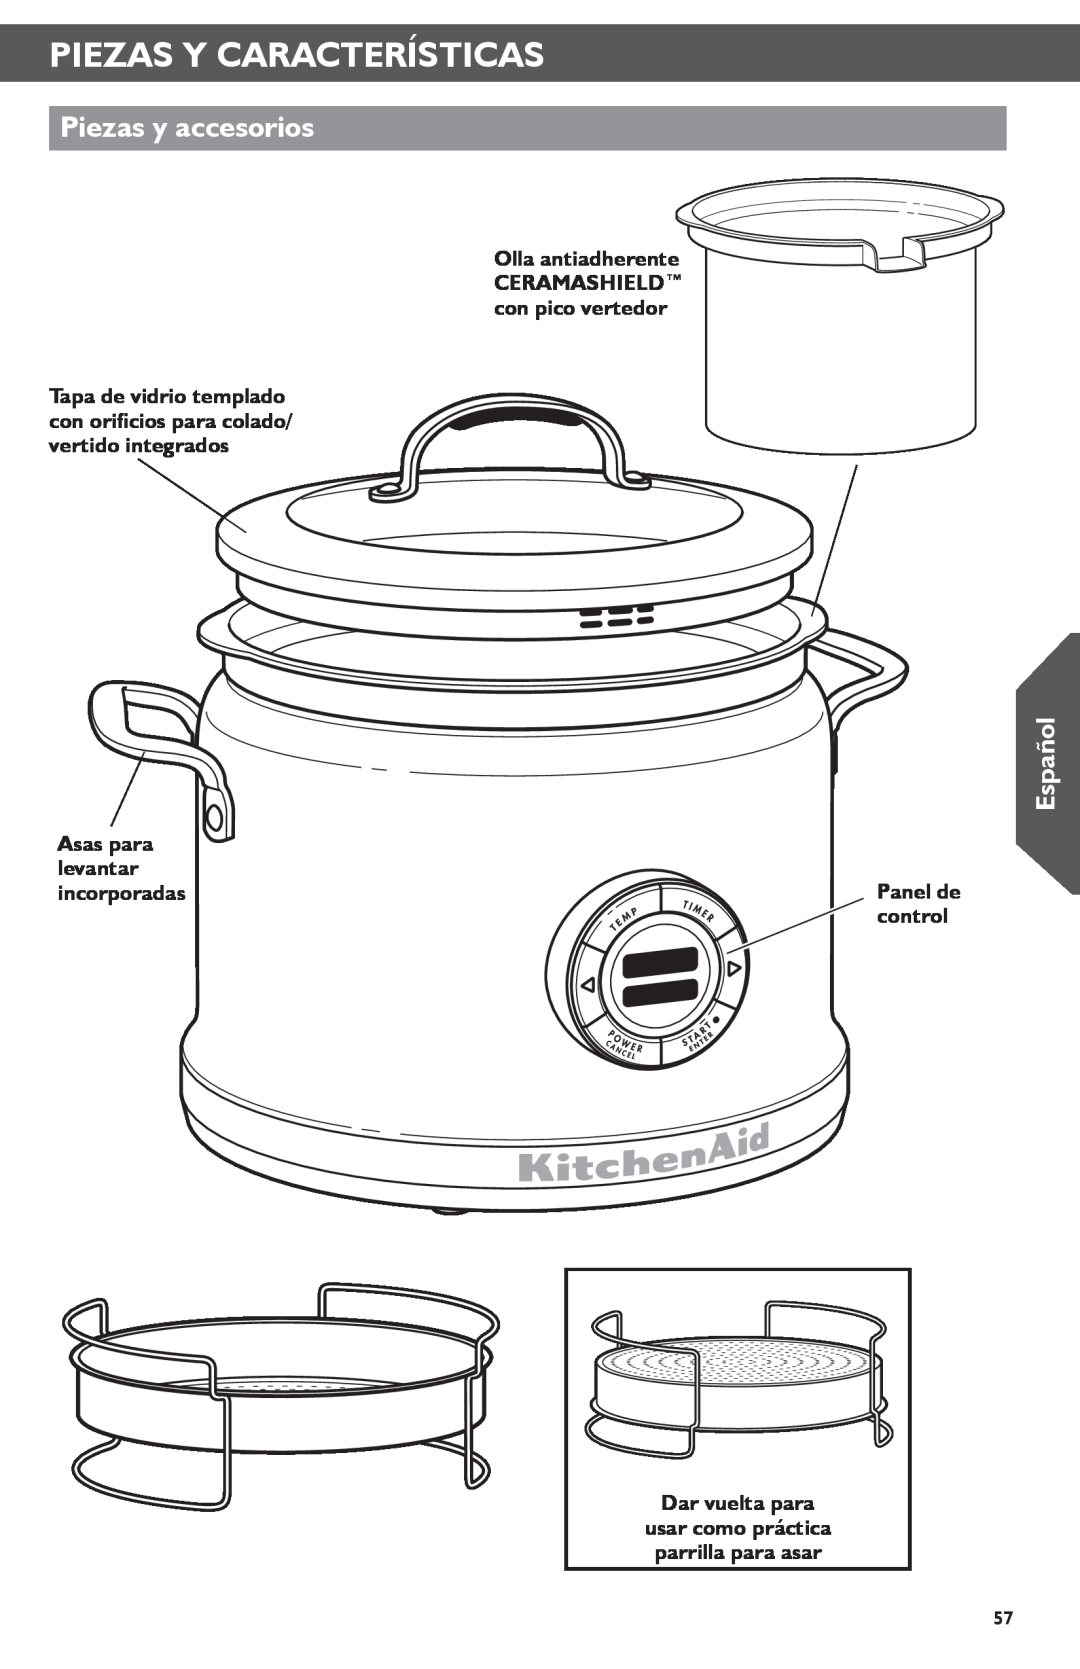 KitchenAid KMC4241 manual Piezas Y Características, Piezas y accesorios, Español, Sear, Panel de 